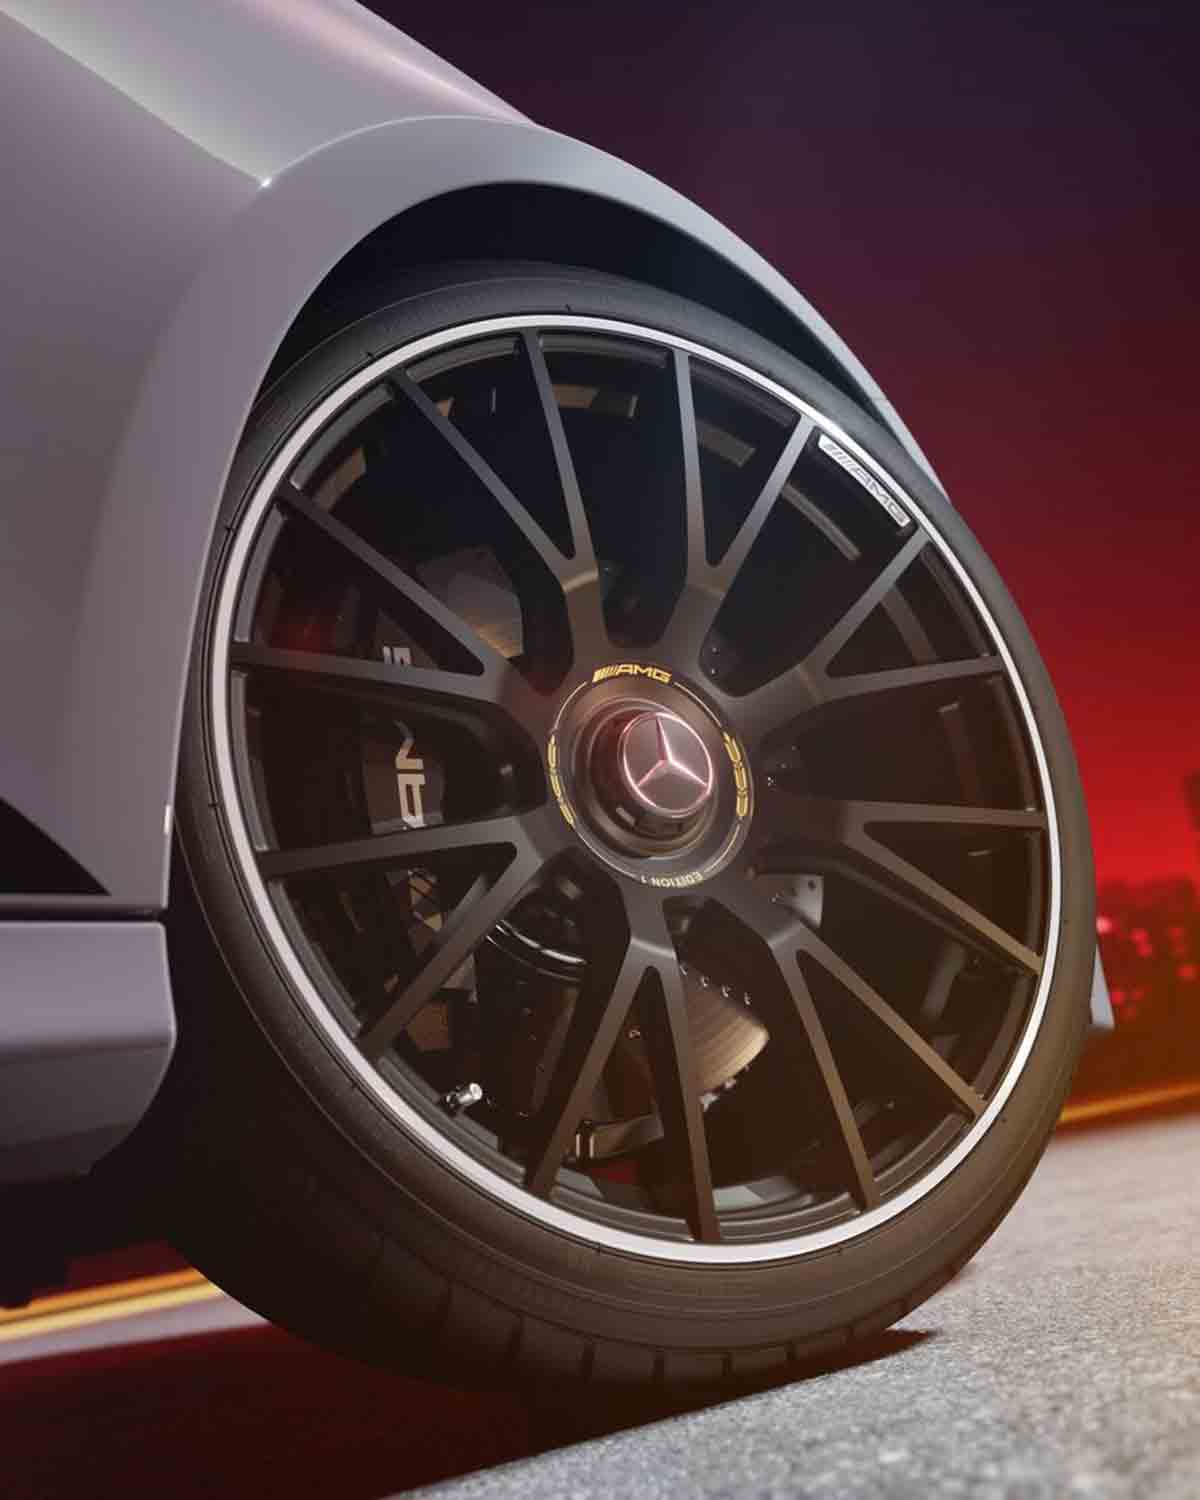 Mercedes-AMG E 53 associe puissance et efficacité dans la plus récente innovation hybride (Instagram / @mercedesamg)